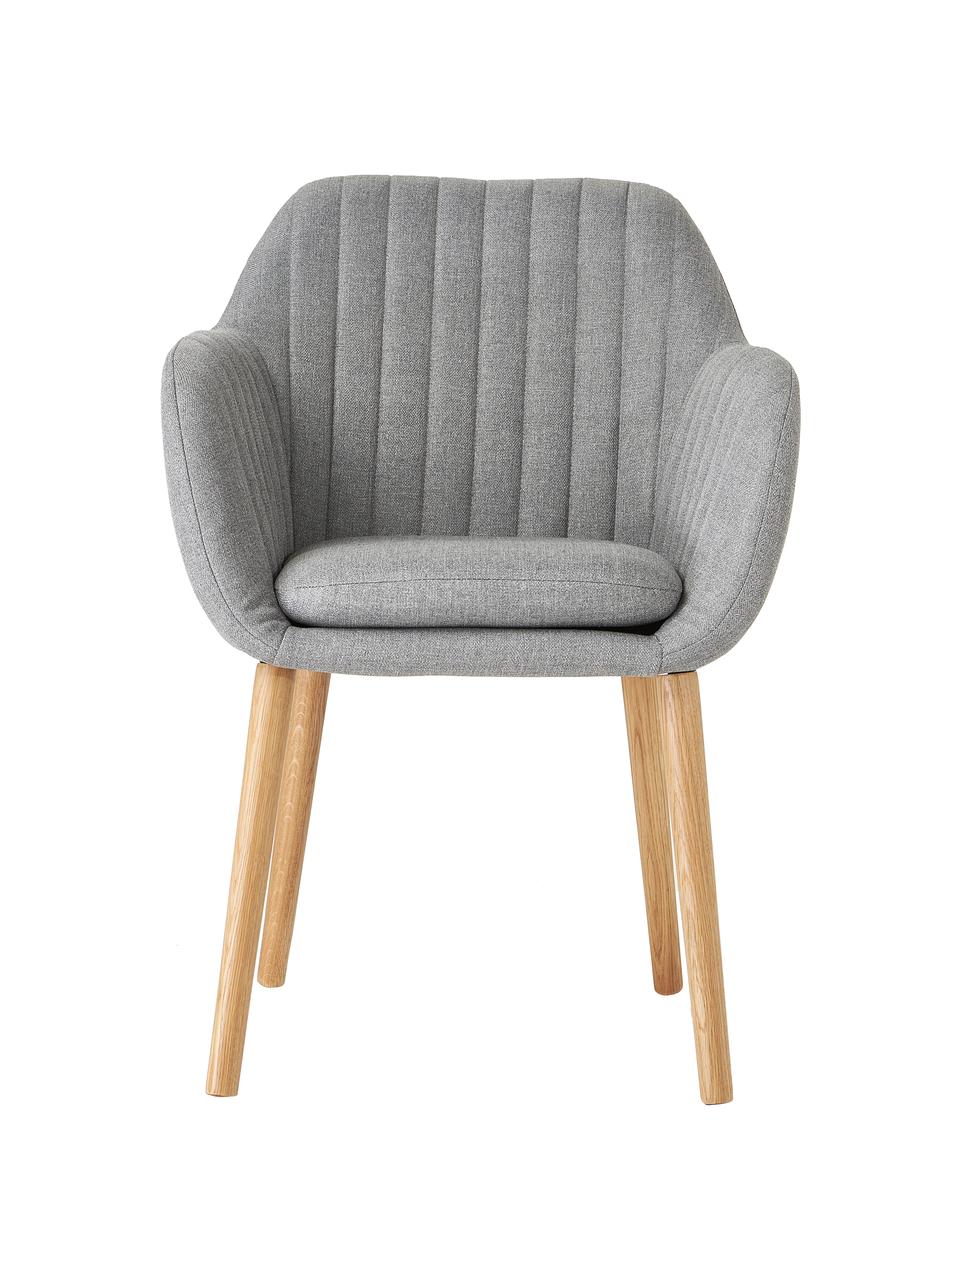 Čalouněná židle s područkami a dřevěnými nohami Emilia, Světle šedá, dubové dřevo, Š 57 cm, H 59 cm